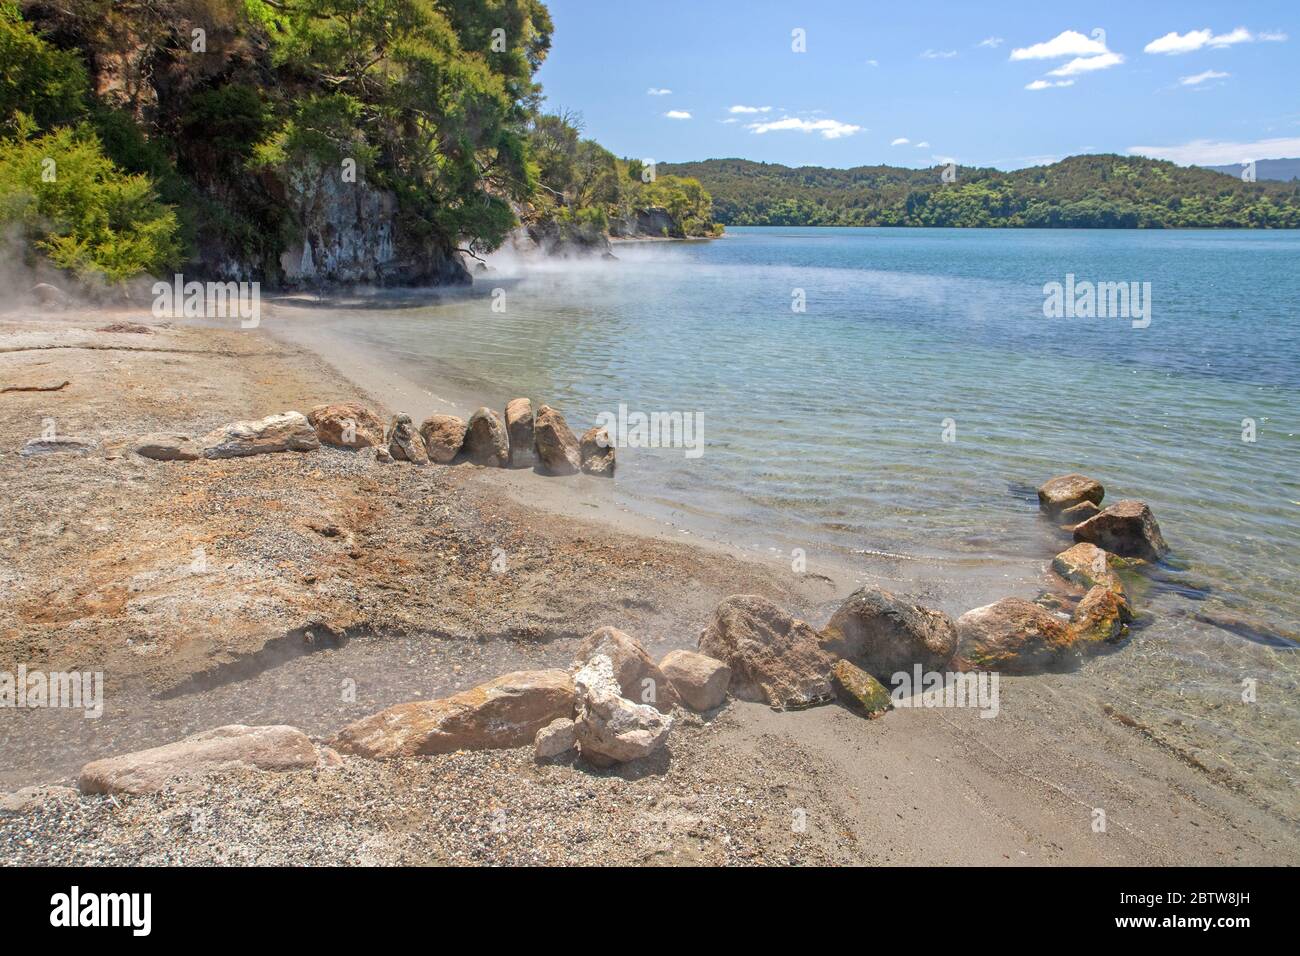 Hot Water Beach on Lake Tarawera Stock Photo